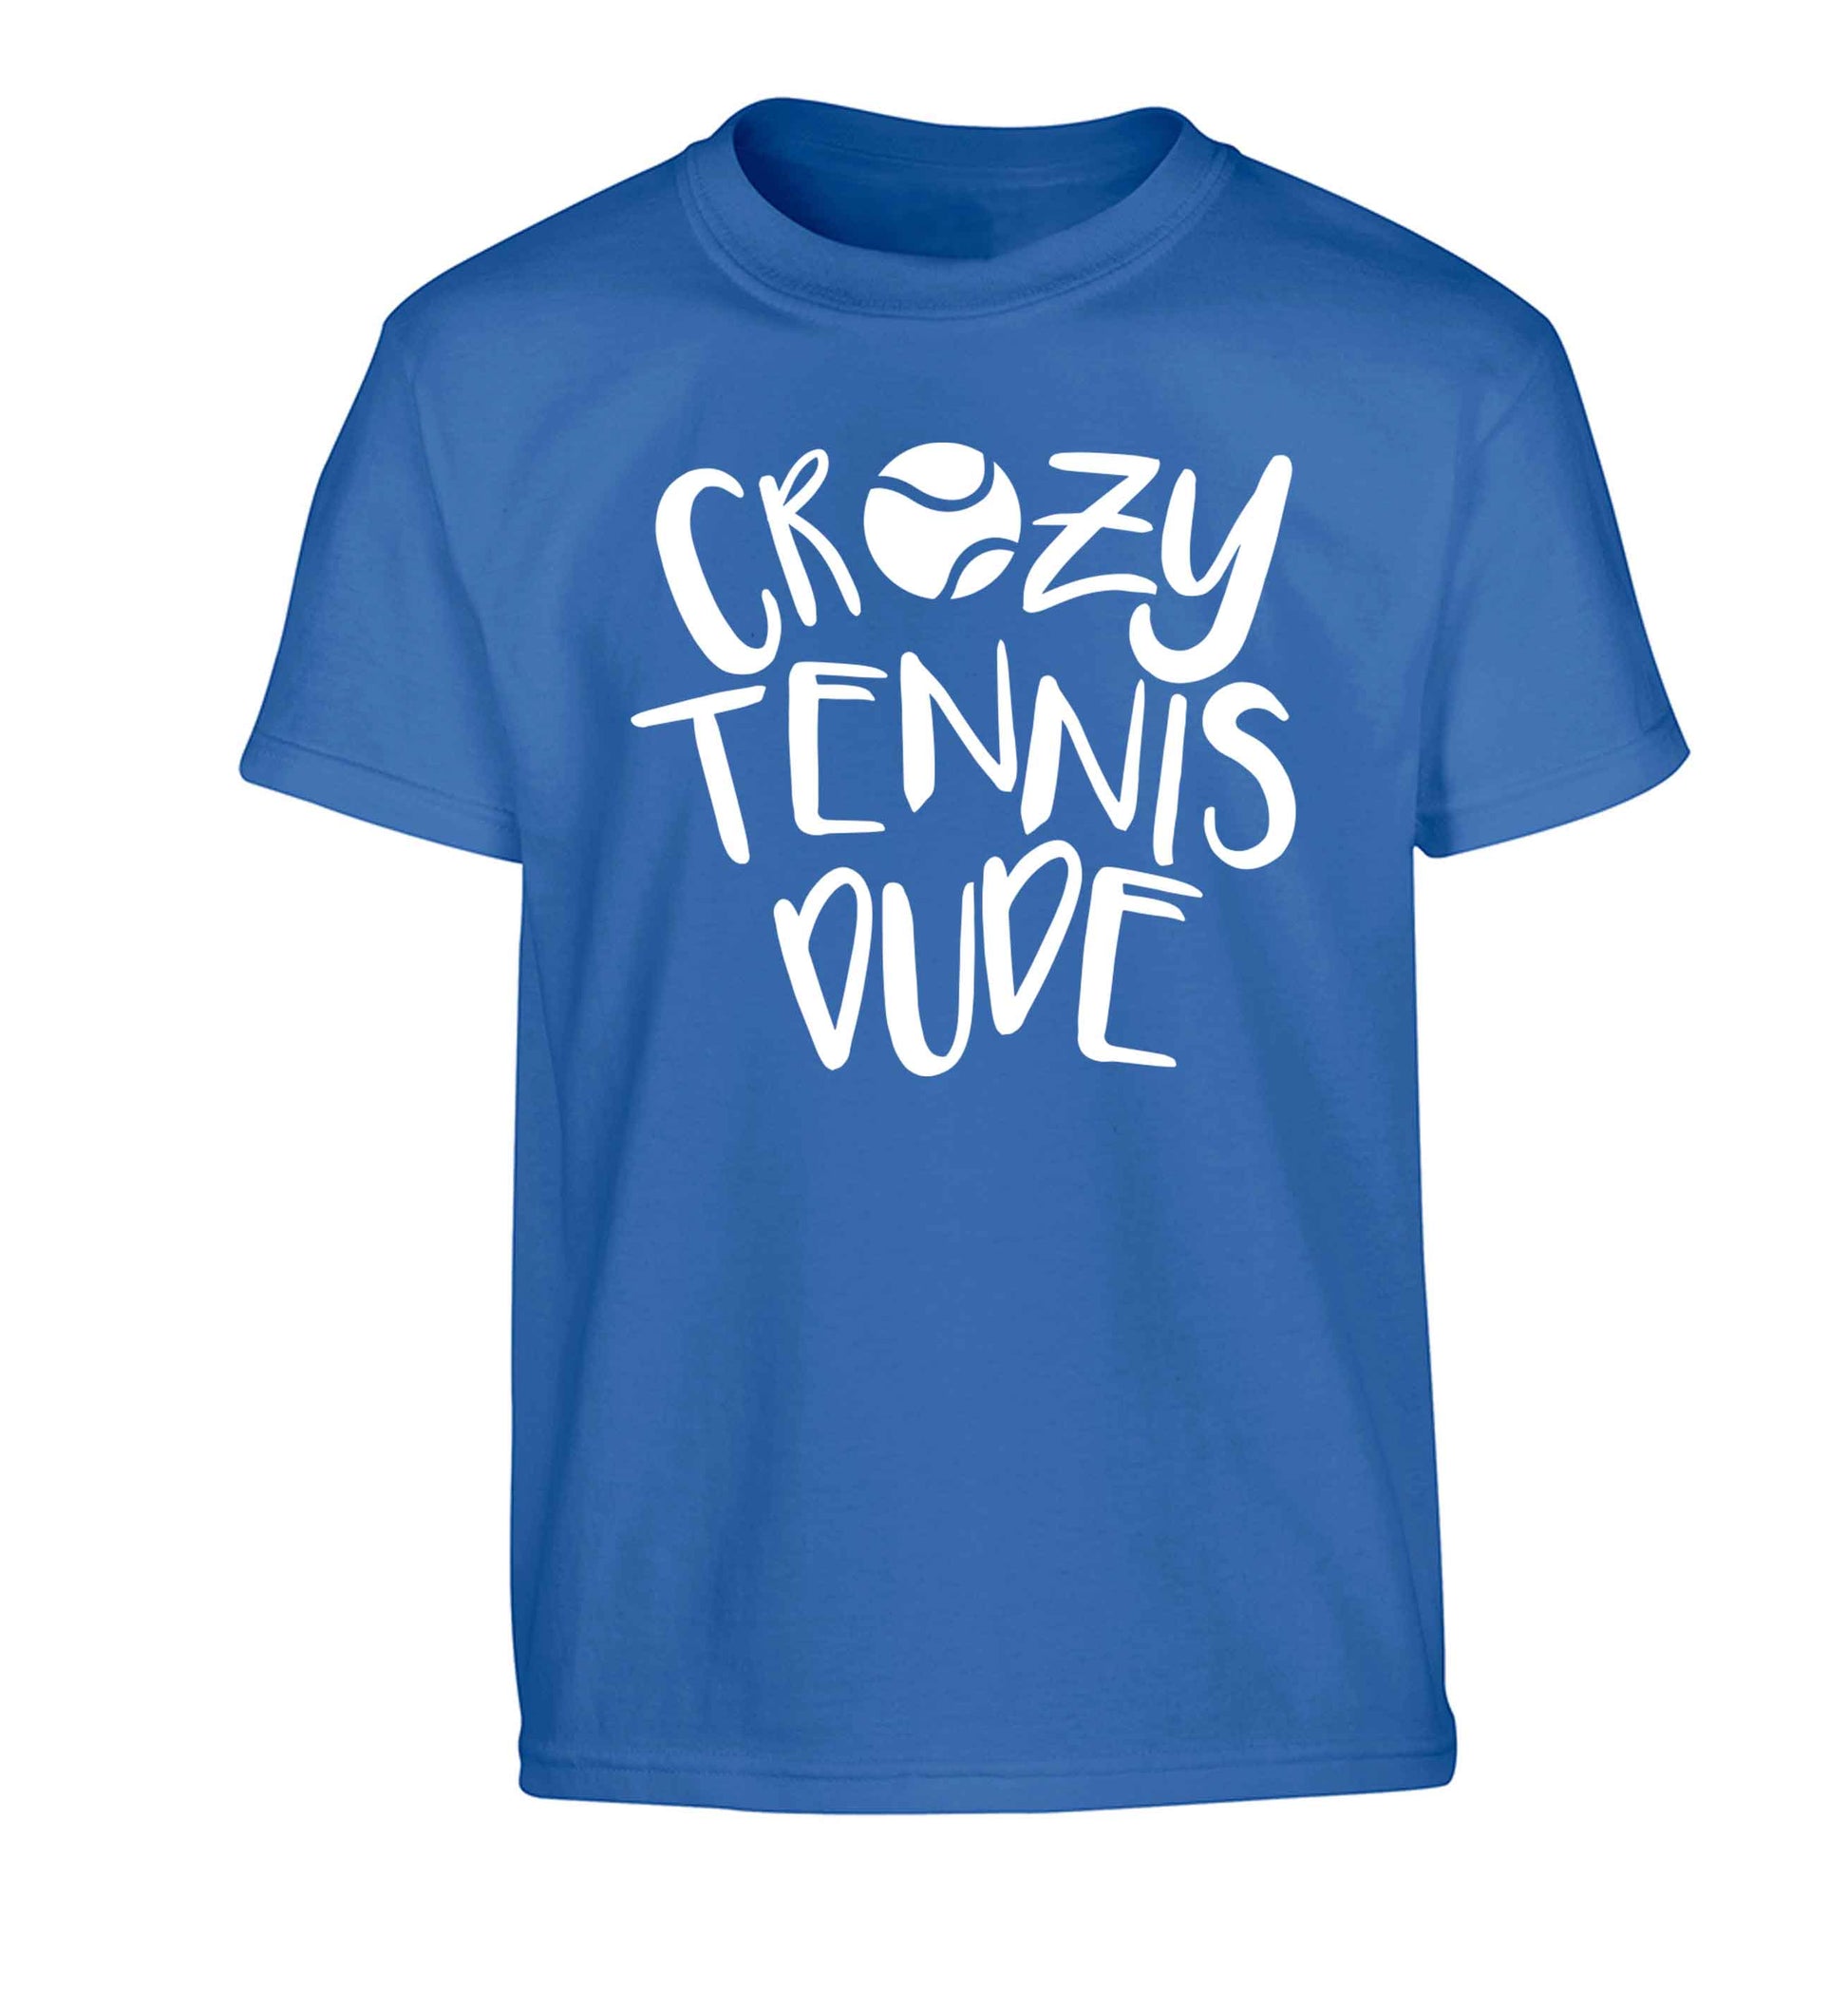 Crazy tennis dude Children's blue Tshirt 12-13 Years